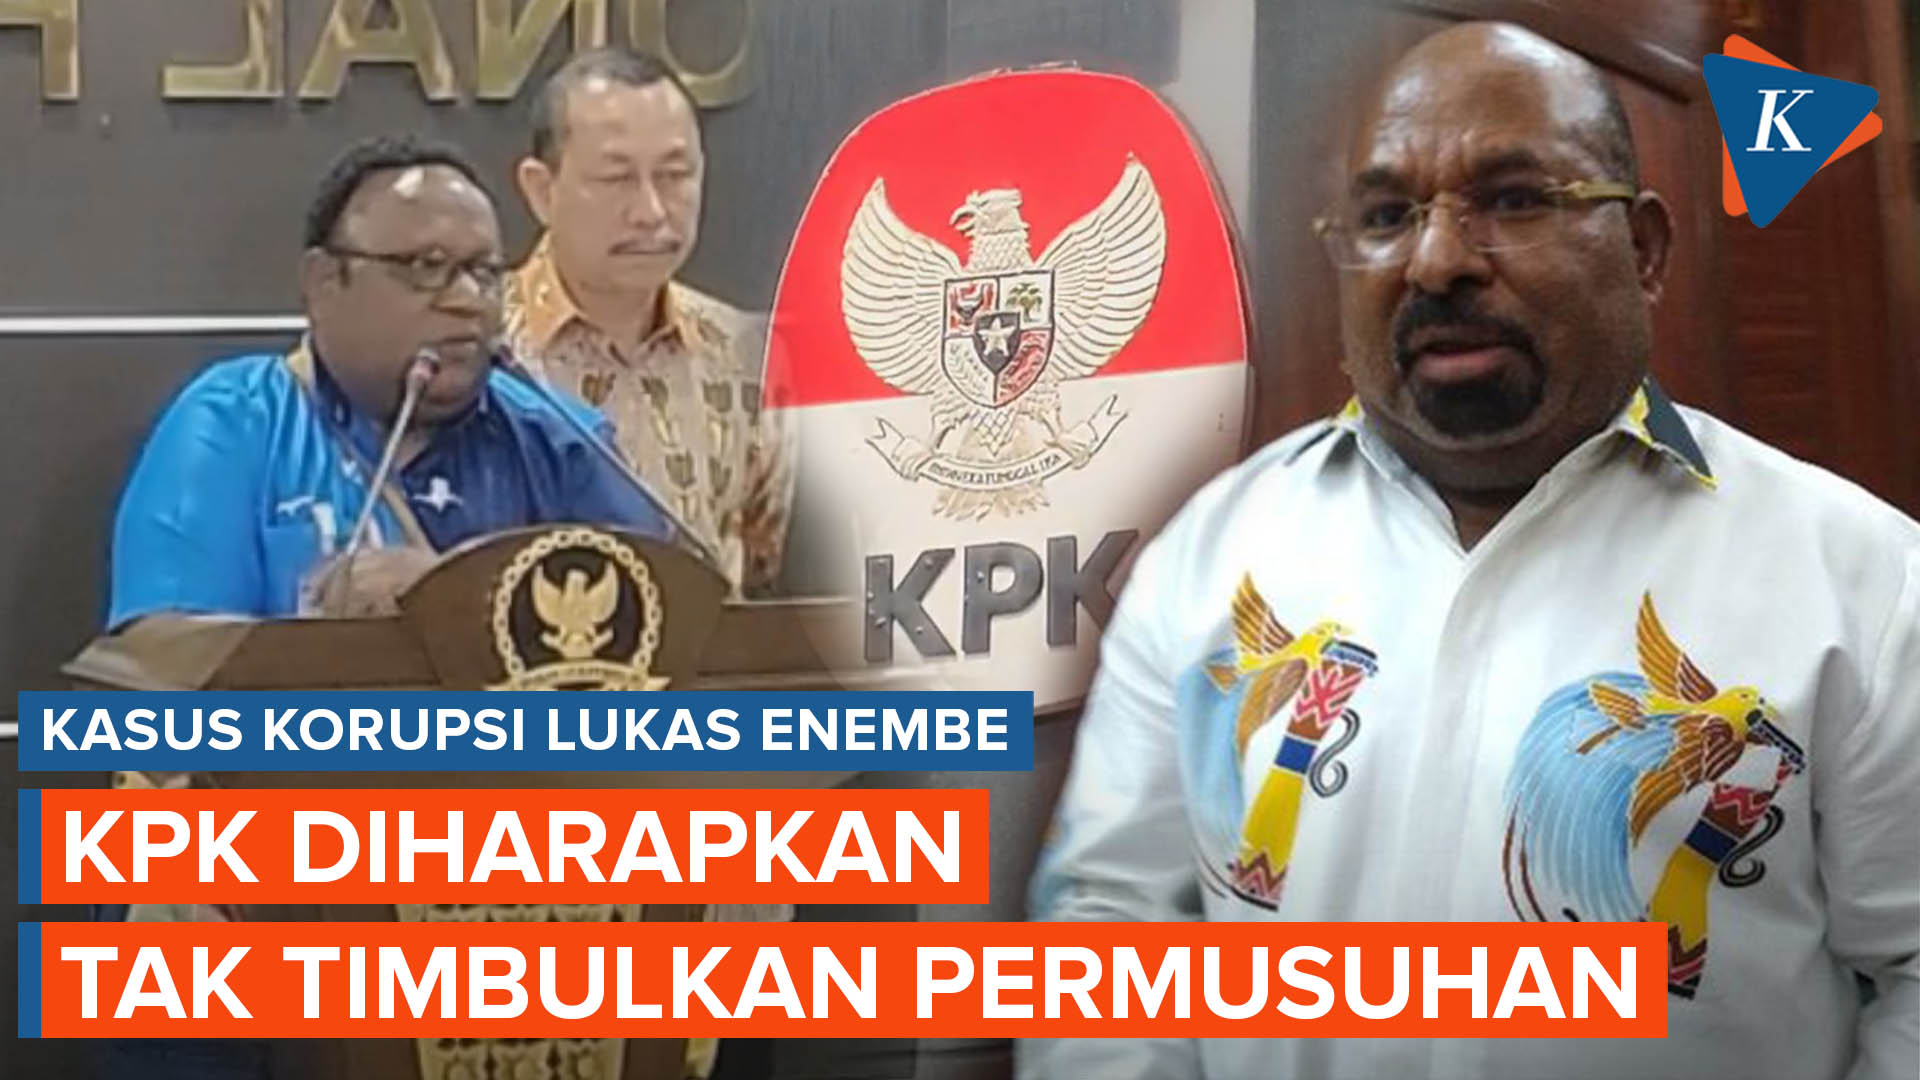 Soal Lukas Enembe, DPR Papua Berpesan ke KPK Untuk Tak Memancing Konflik